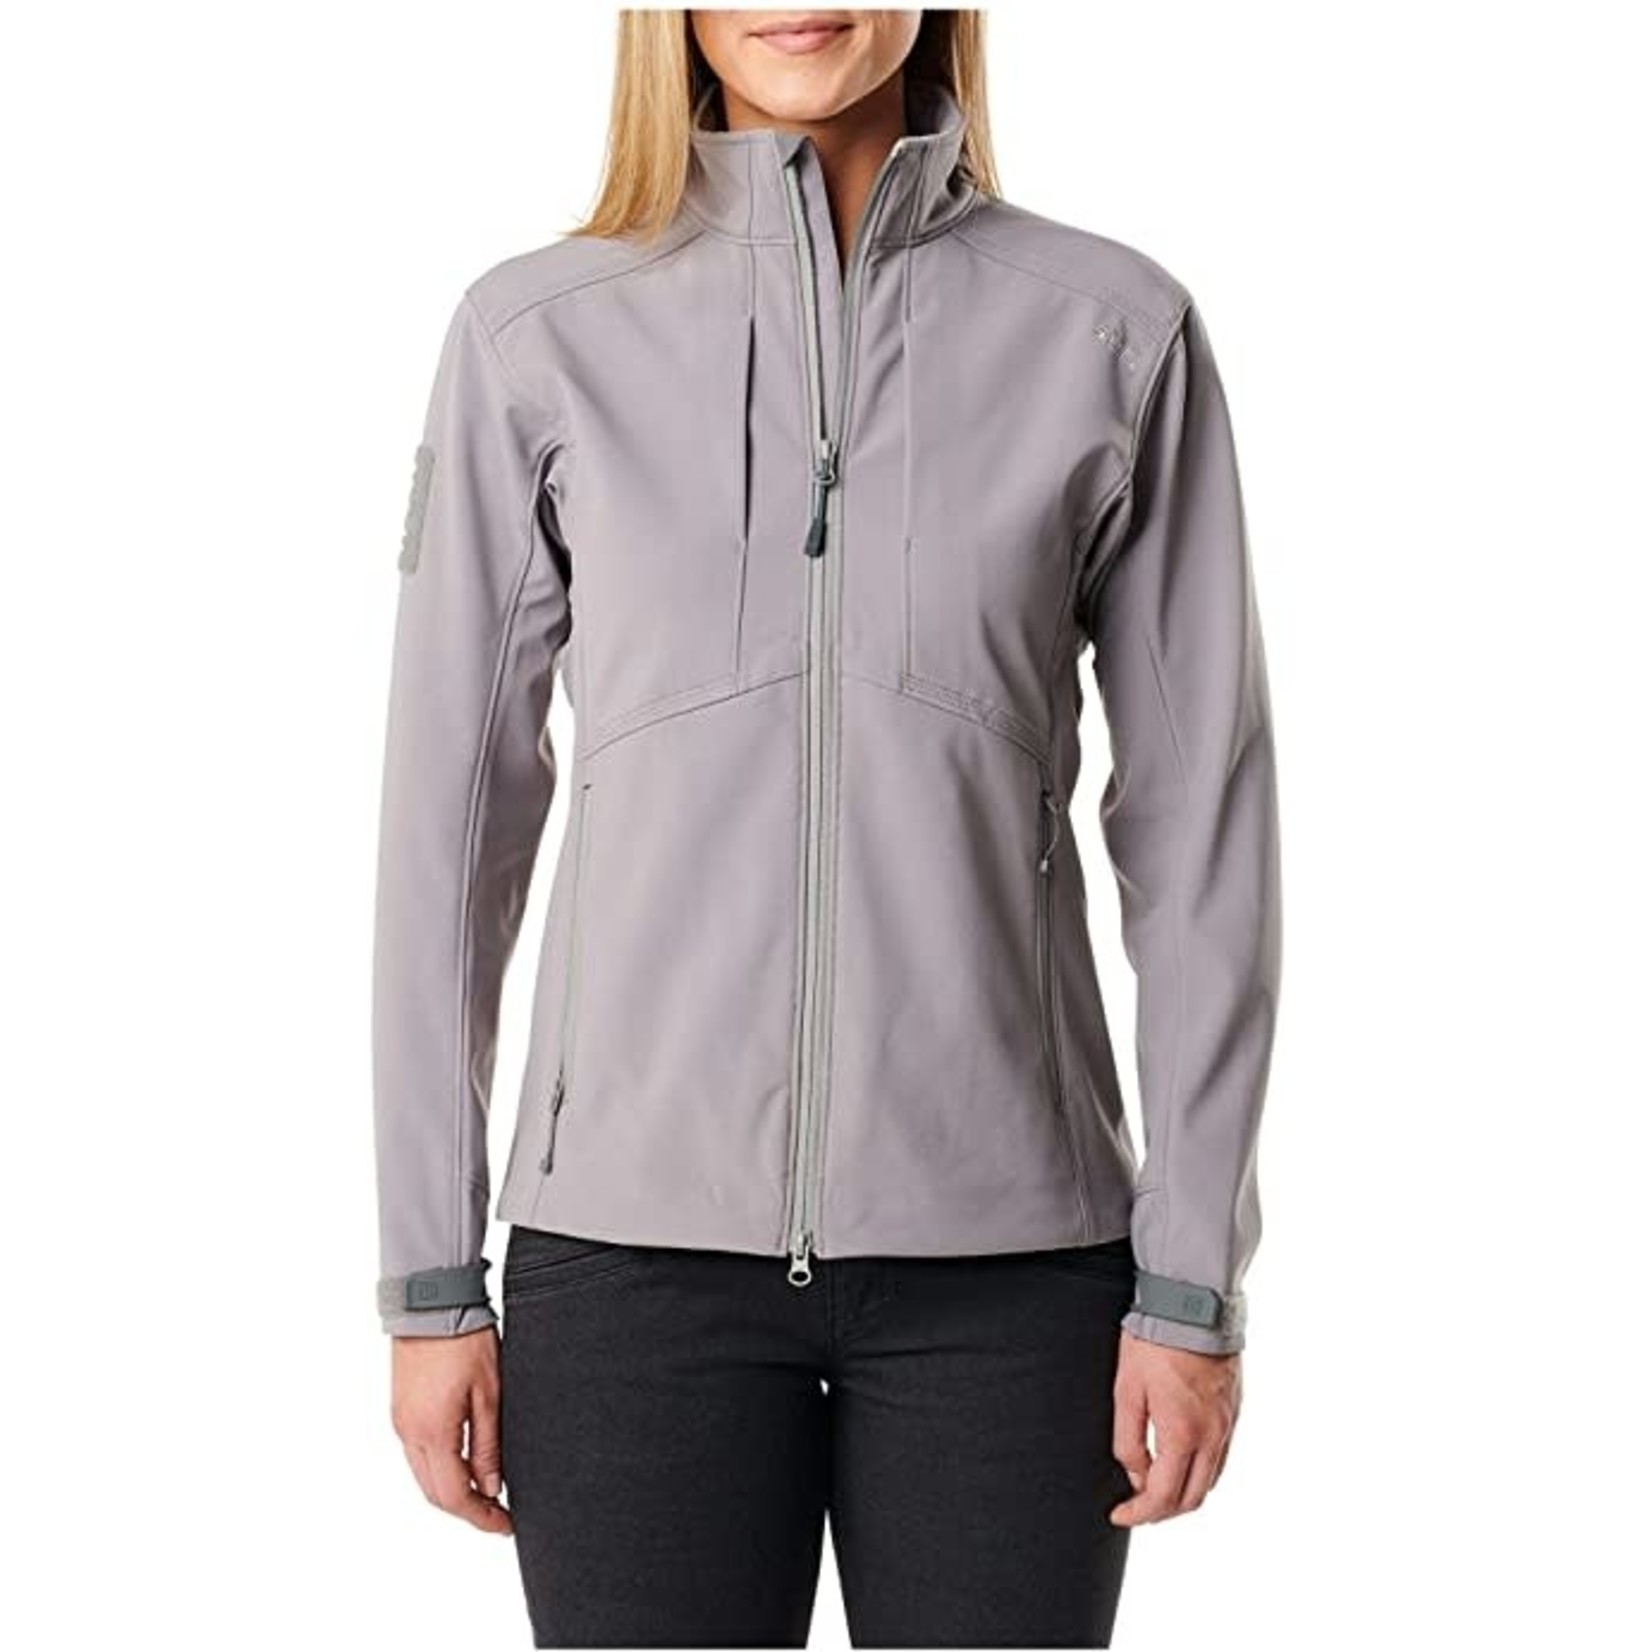 5.11 Tactical 5.11 Women's Sierra Softshell Jacket